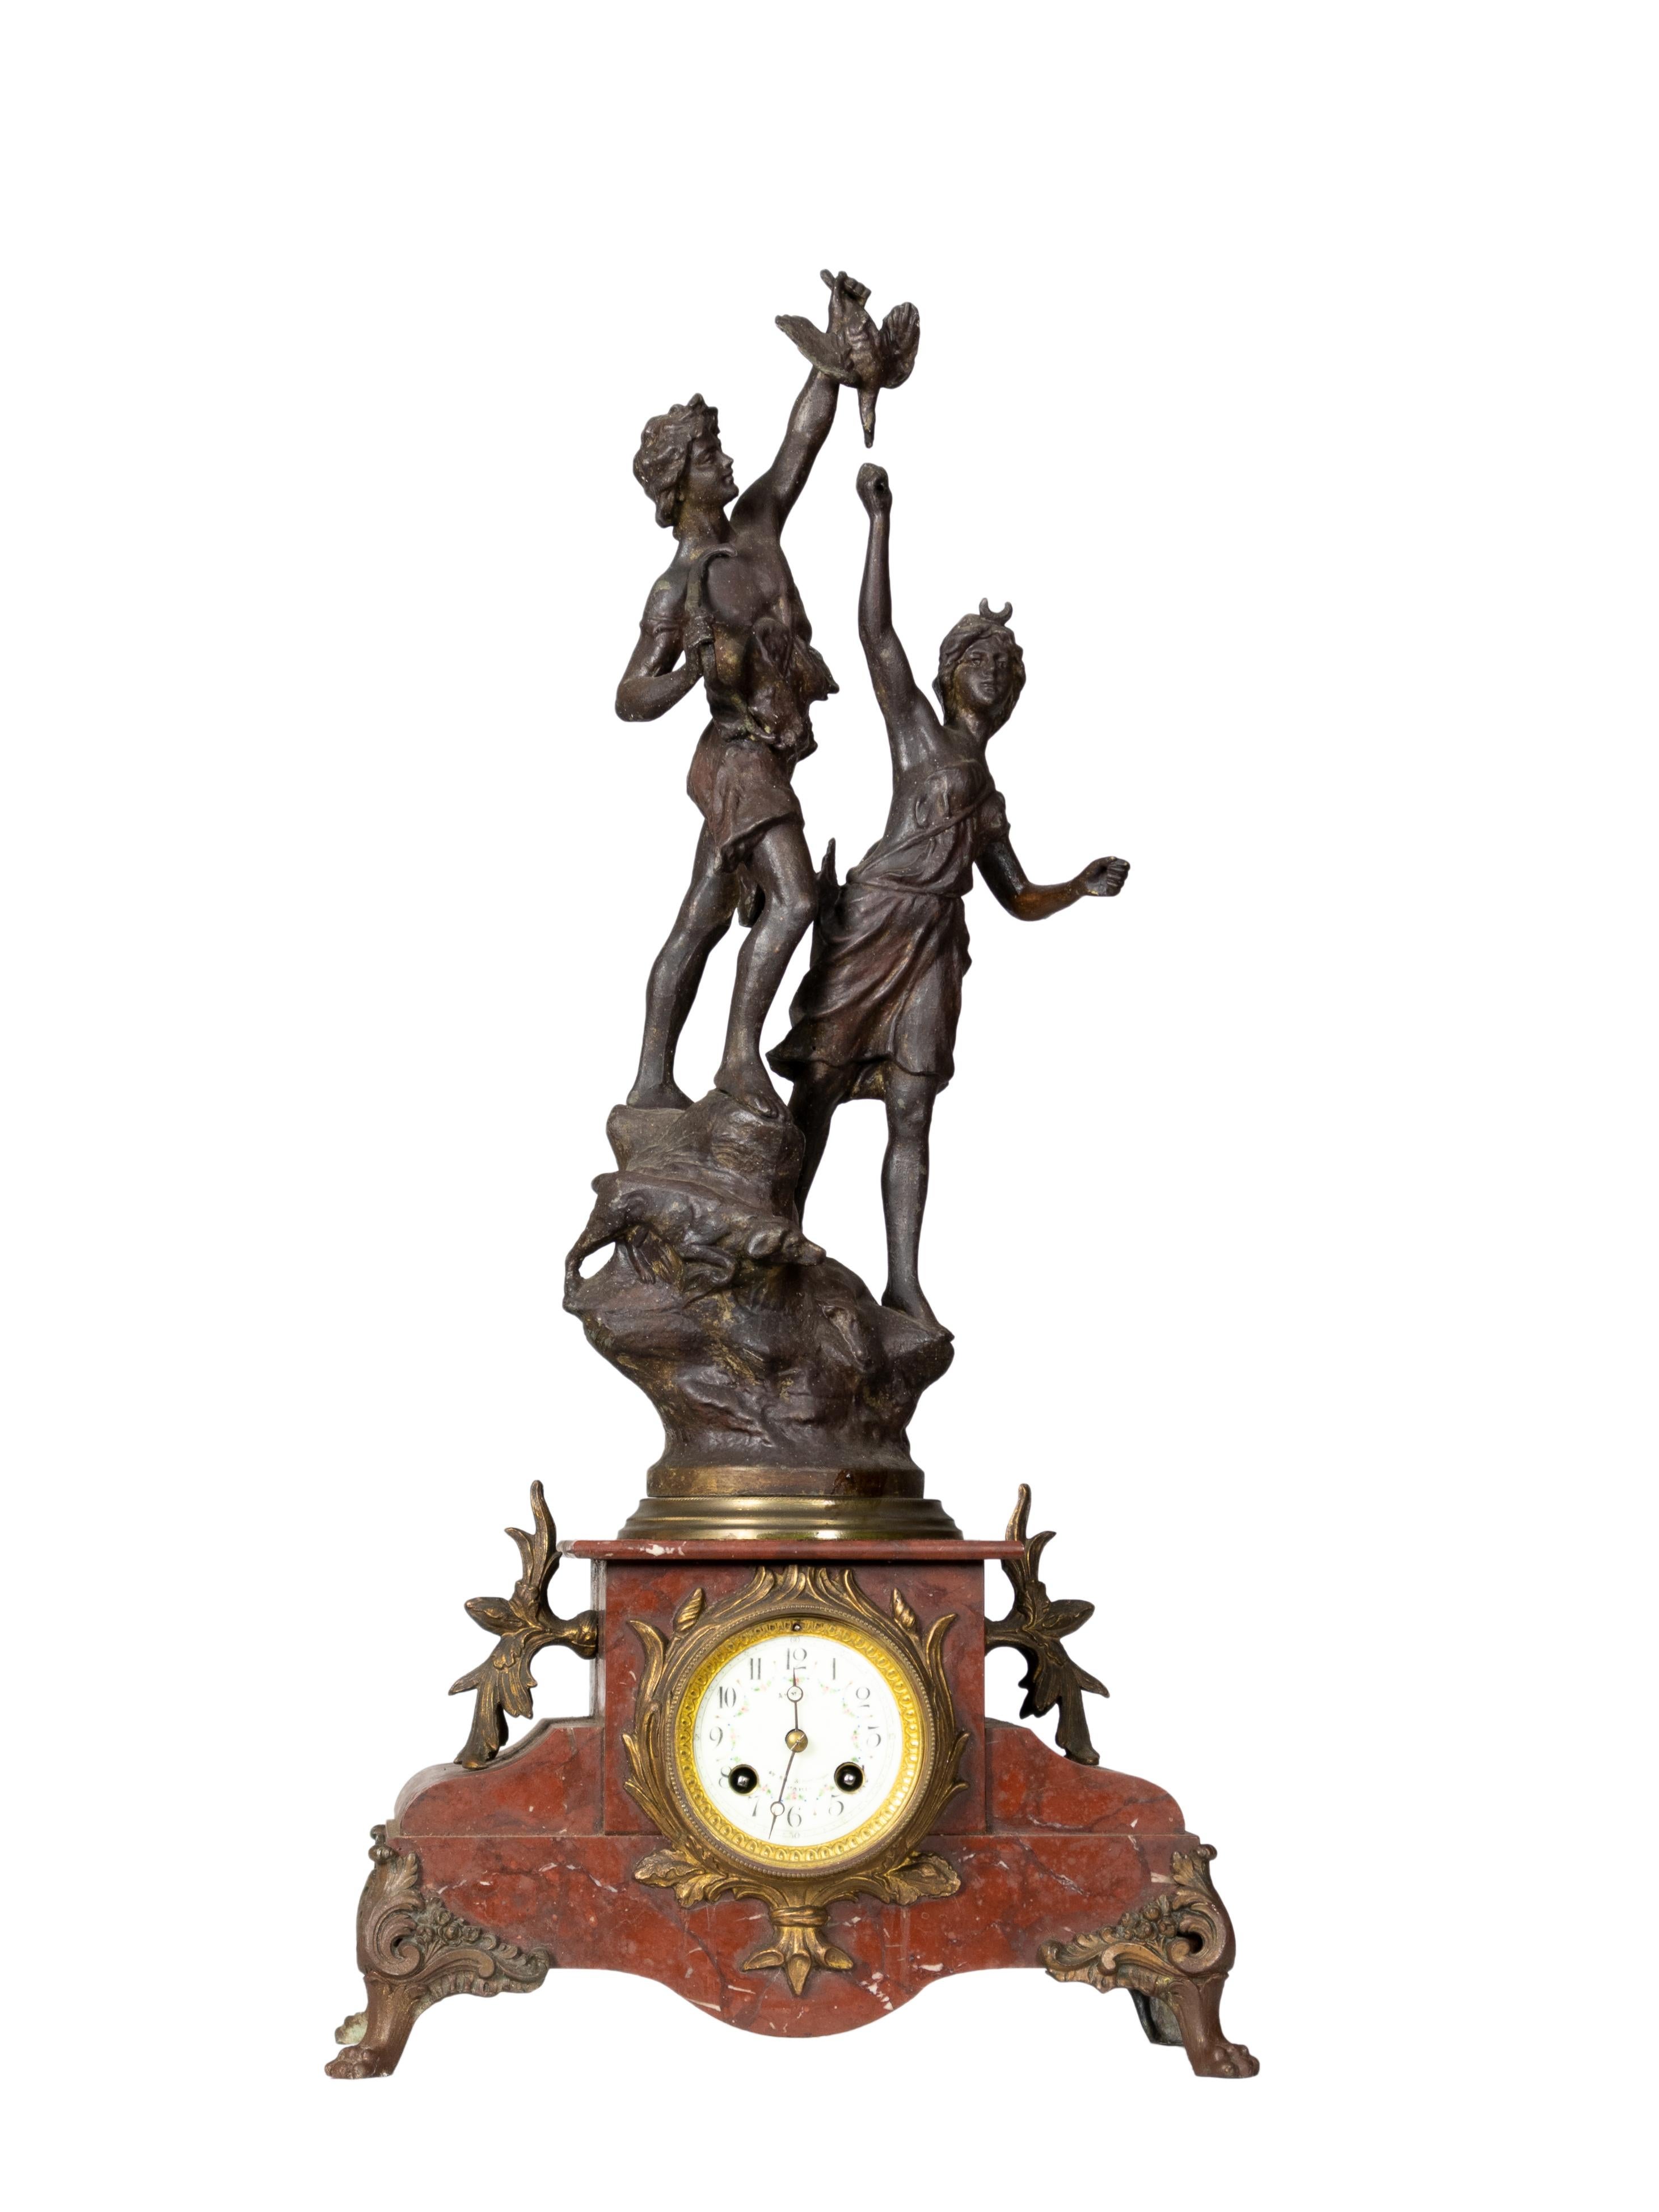 Eine vollständige und funktionstüchtige Metalluhr mit einer geschätzten Figur der römischen Göttin Diana der Jägerin mit einer Nymphe an ihrer Seite, mit Details aus Carrara-Marmor und einem funktionierenden Schweizer Uhrwerk. 
Kürzlich von einem